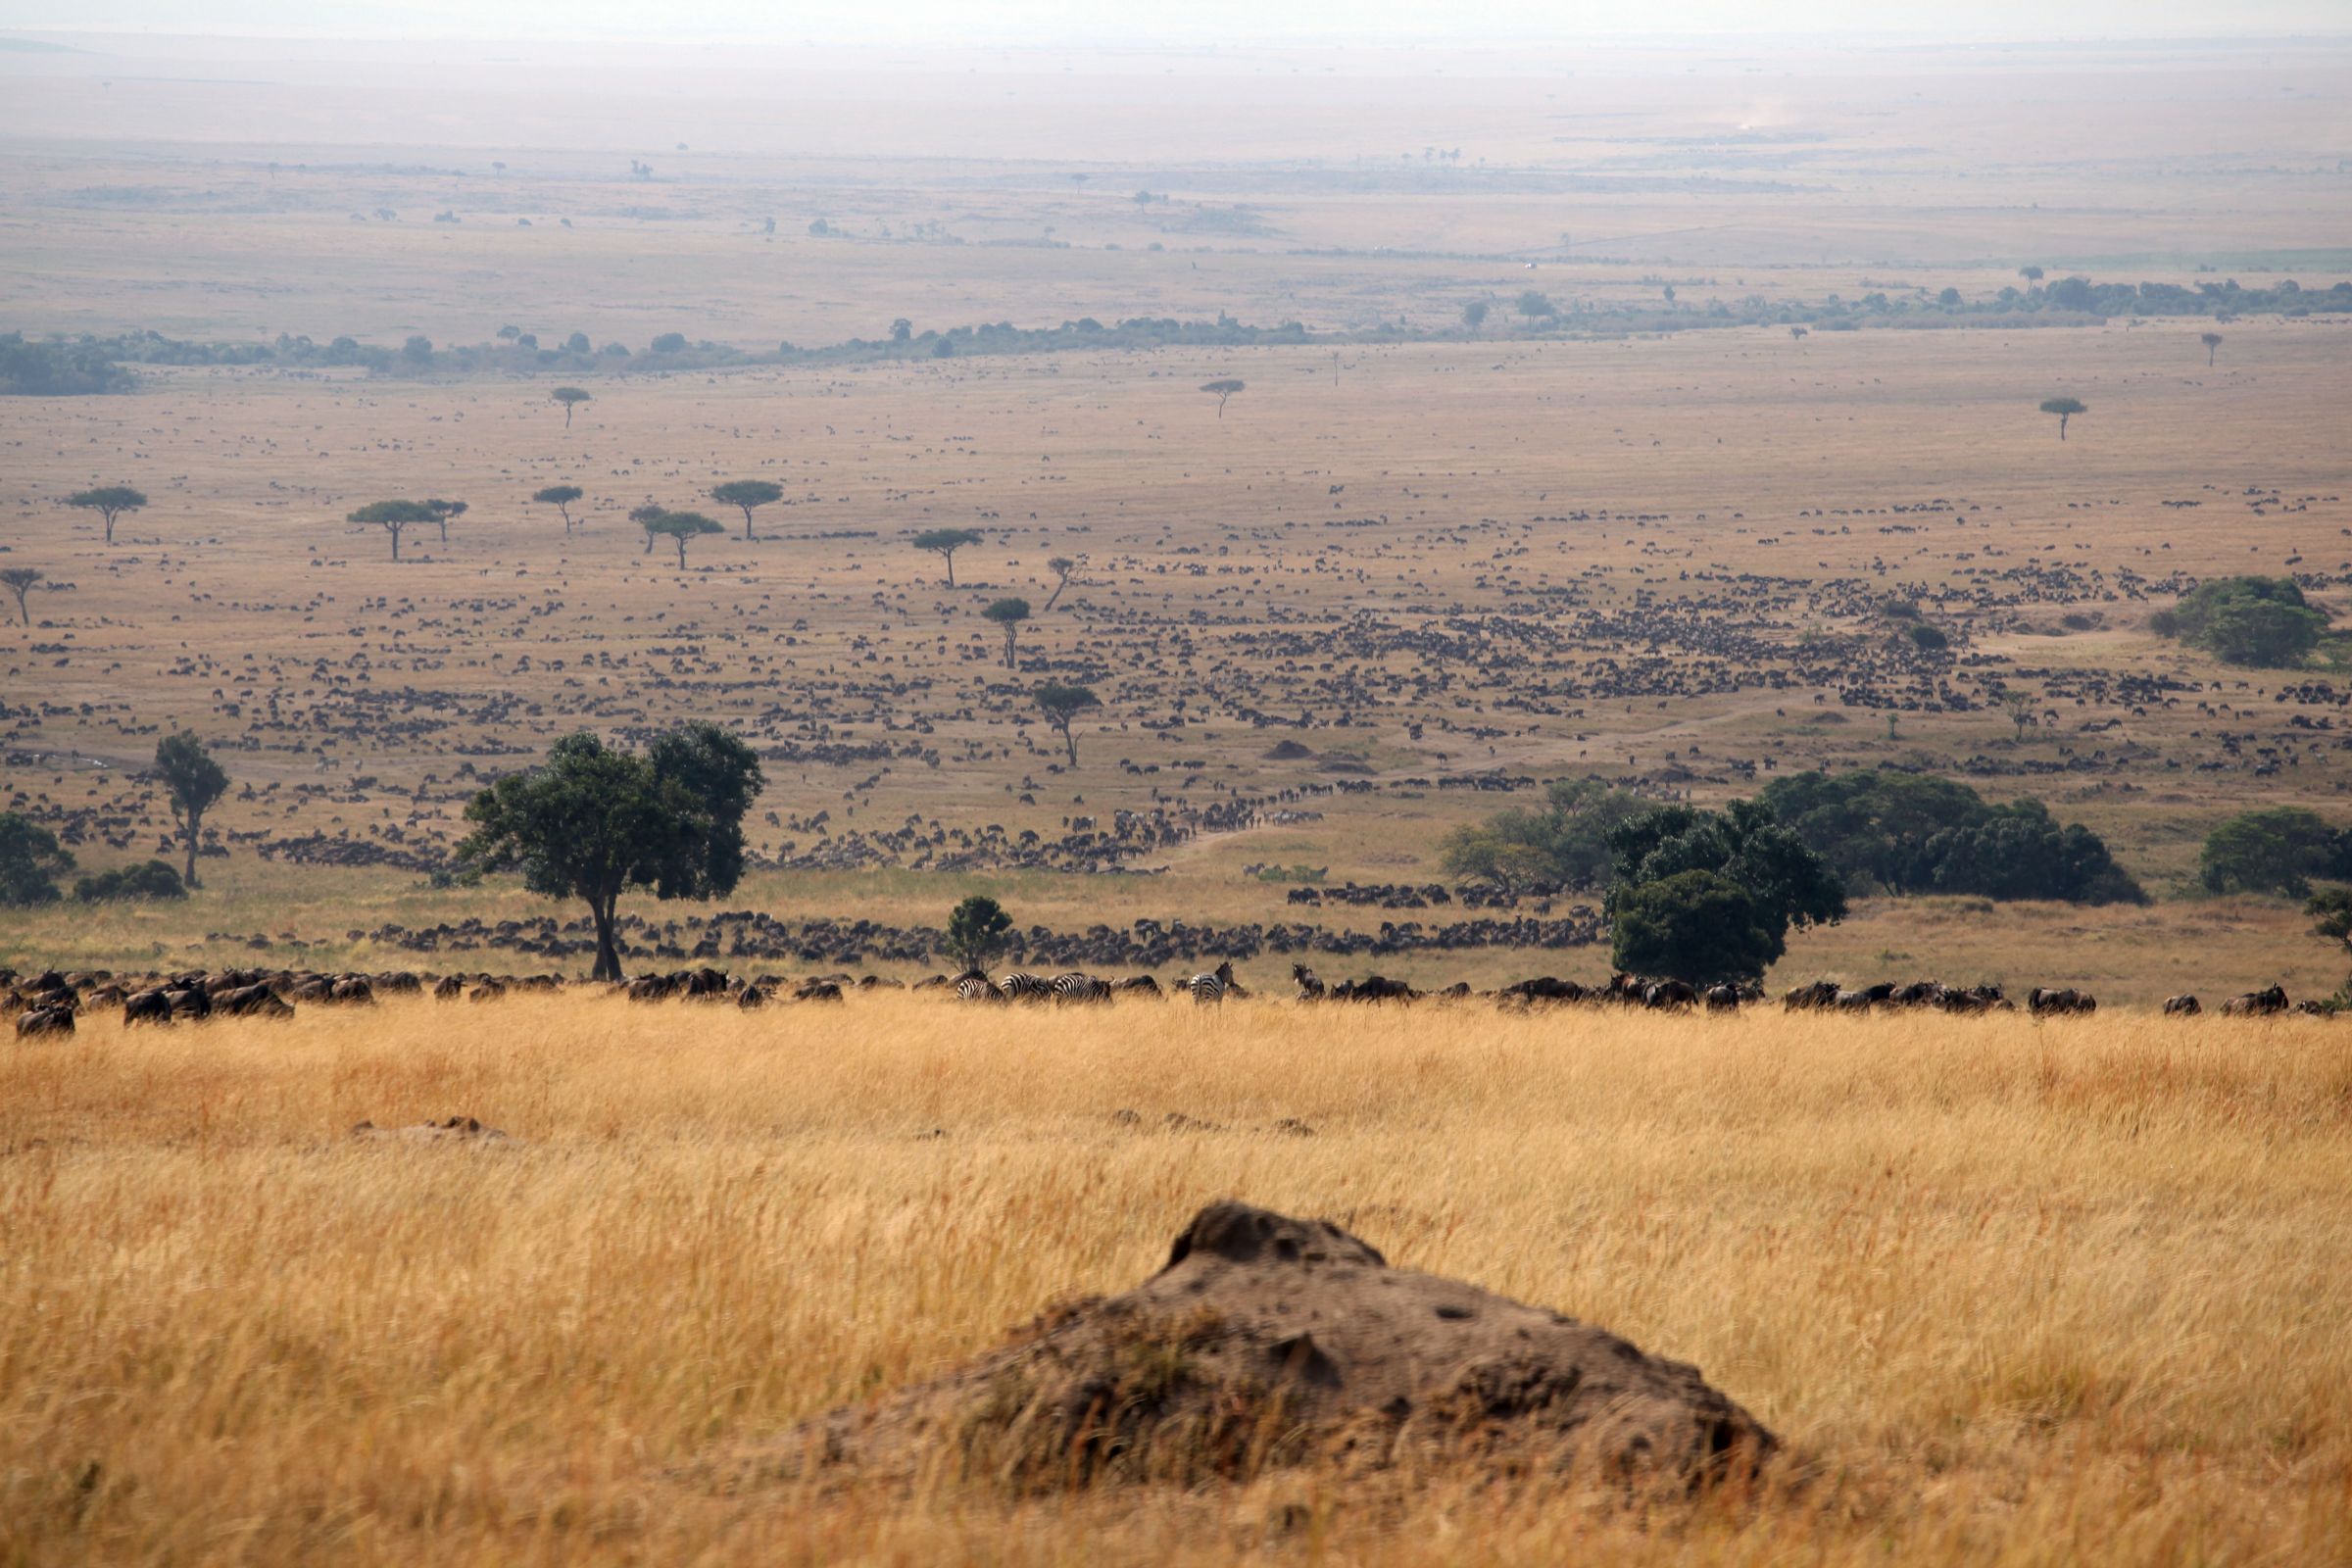 东非:超级肯尼亚,走进动物世界 - 马赛马拉国家公园